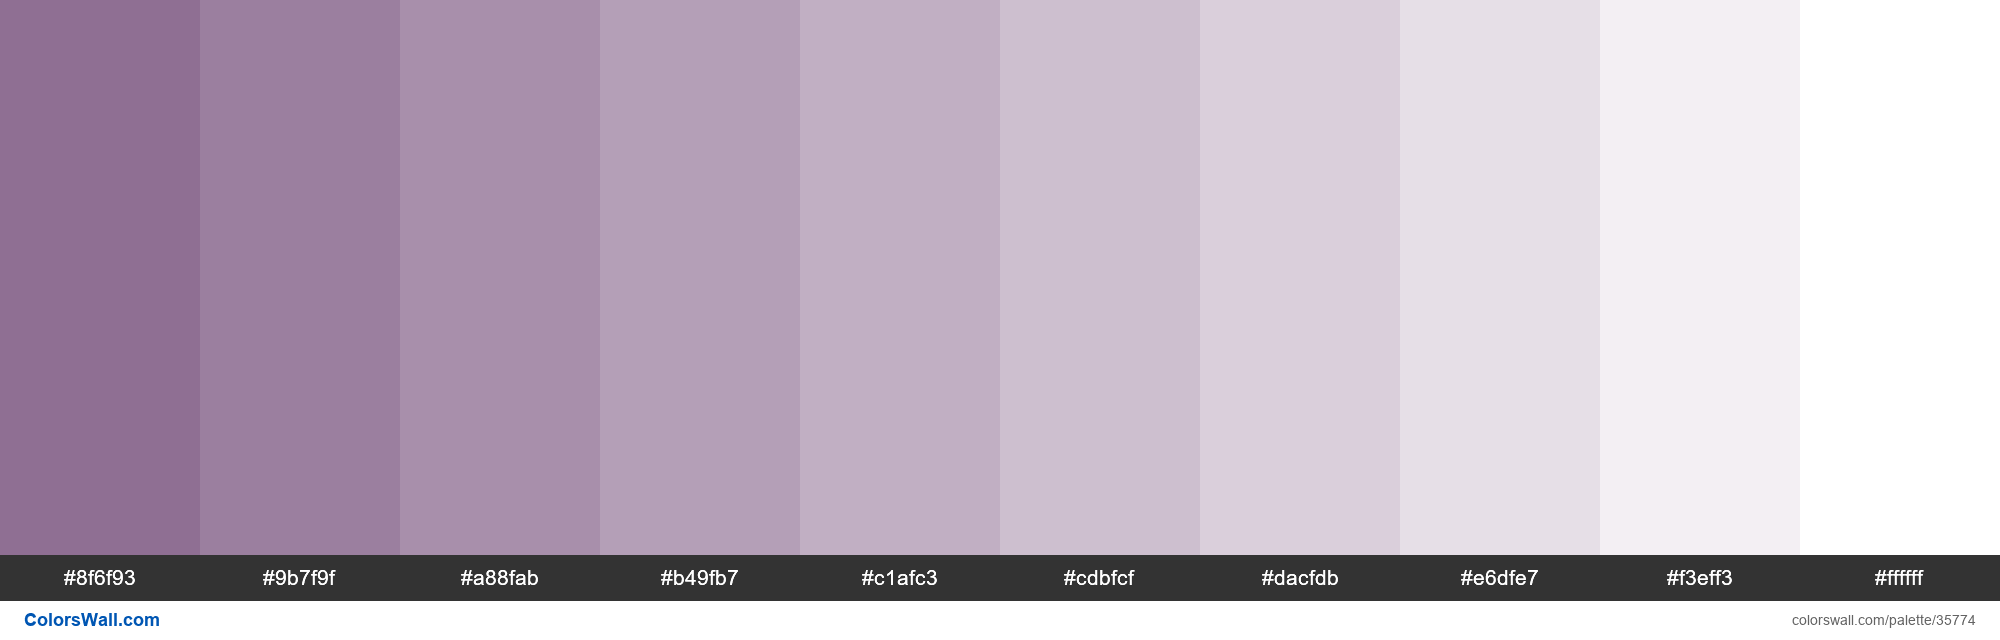 Tints XKCD Color dusty purple #825f87 hex colors palette - ColorsWall